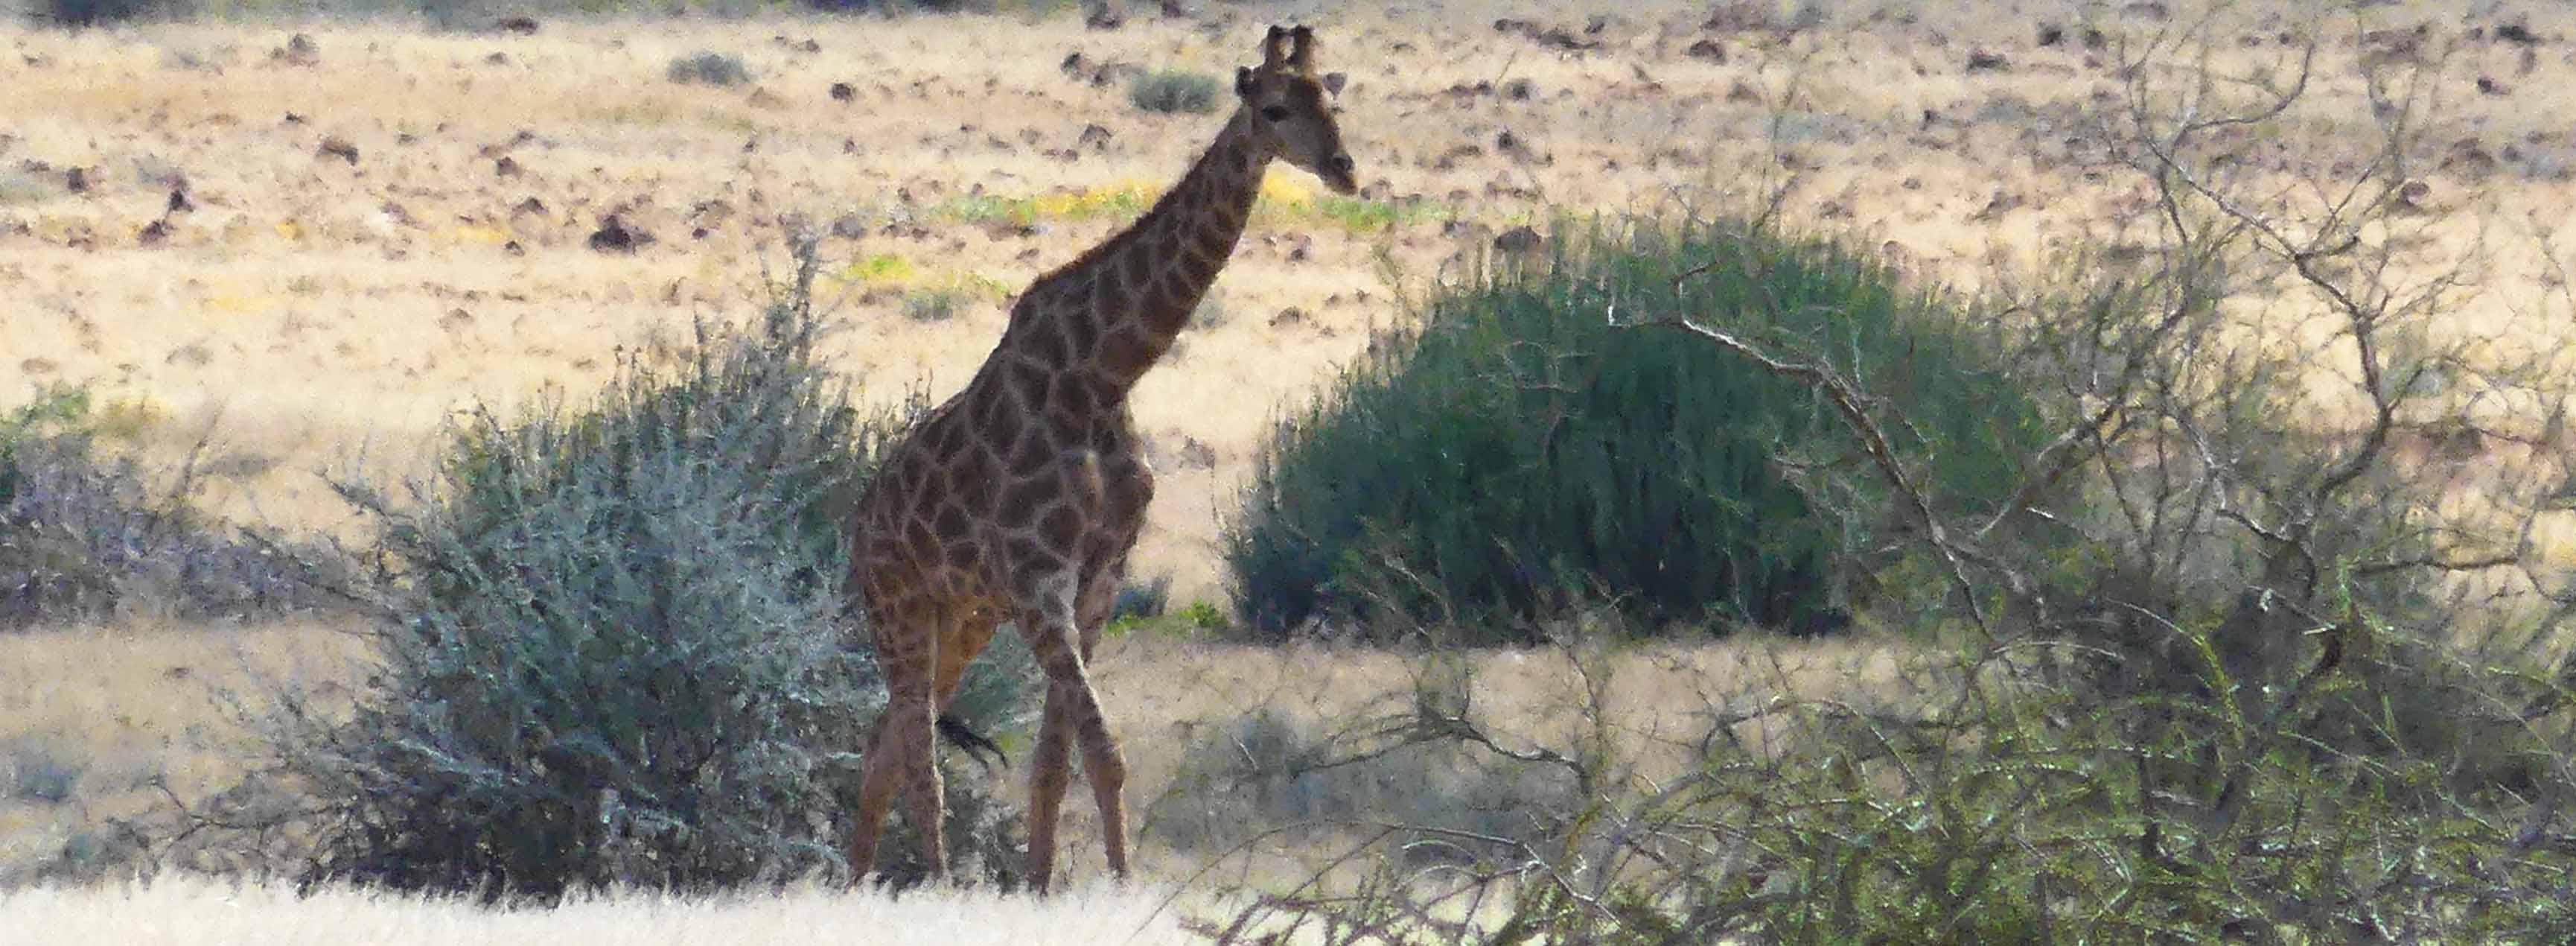 namibie girafe